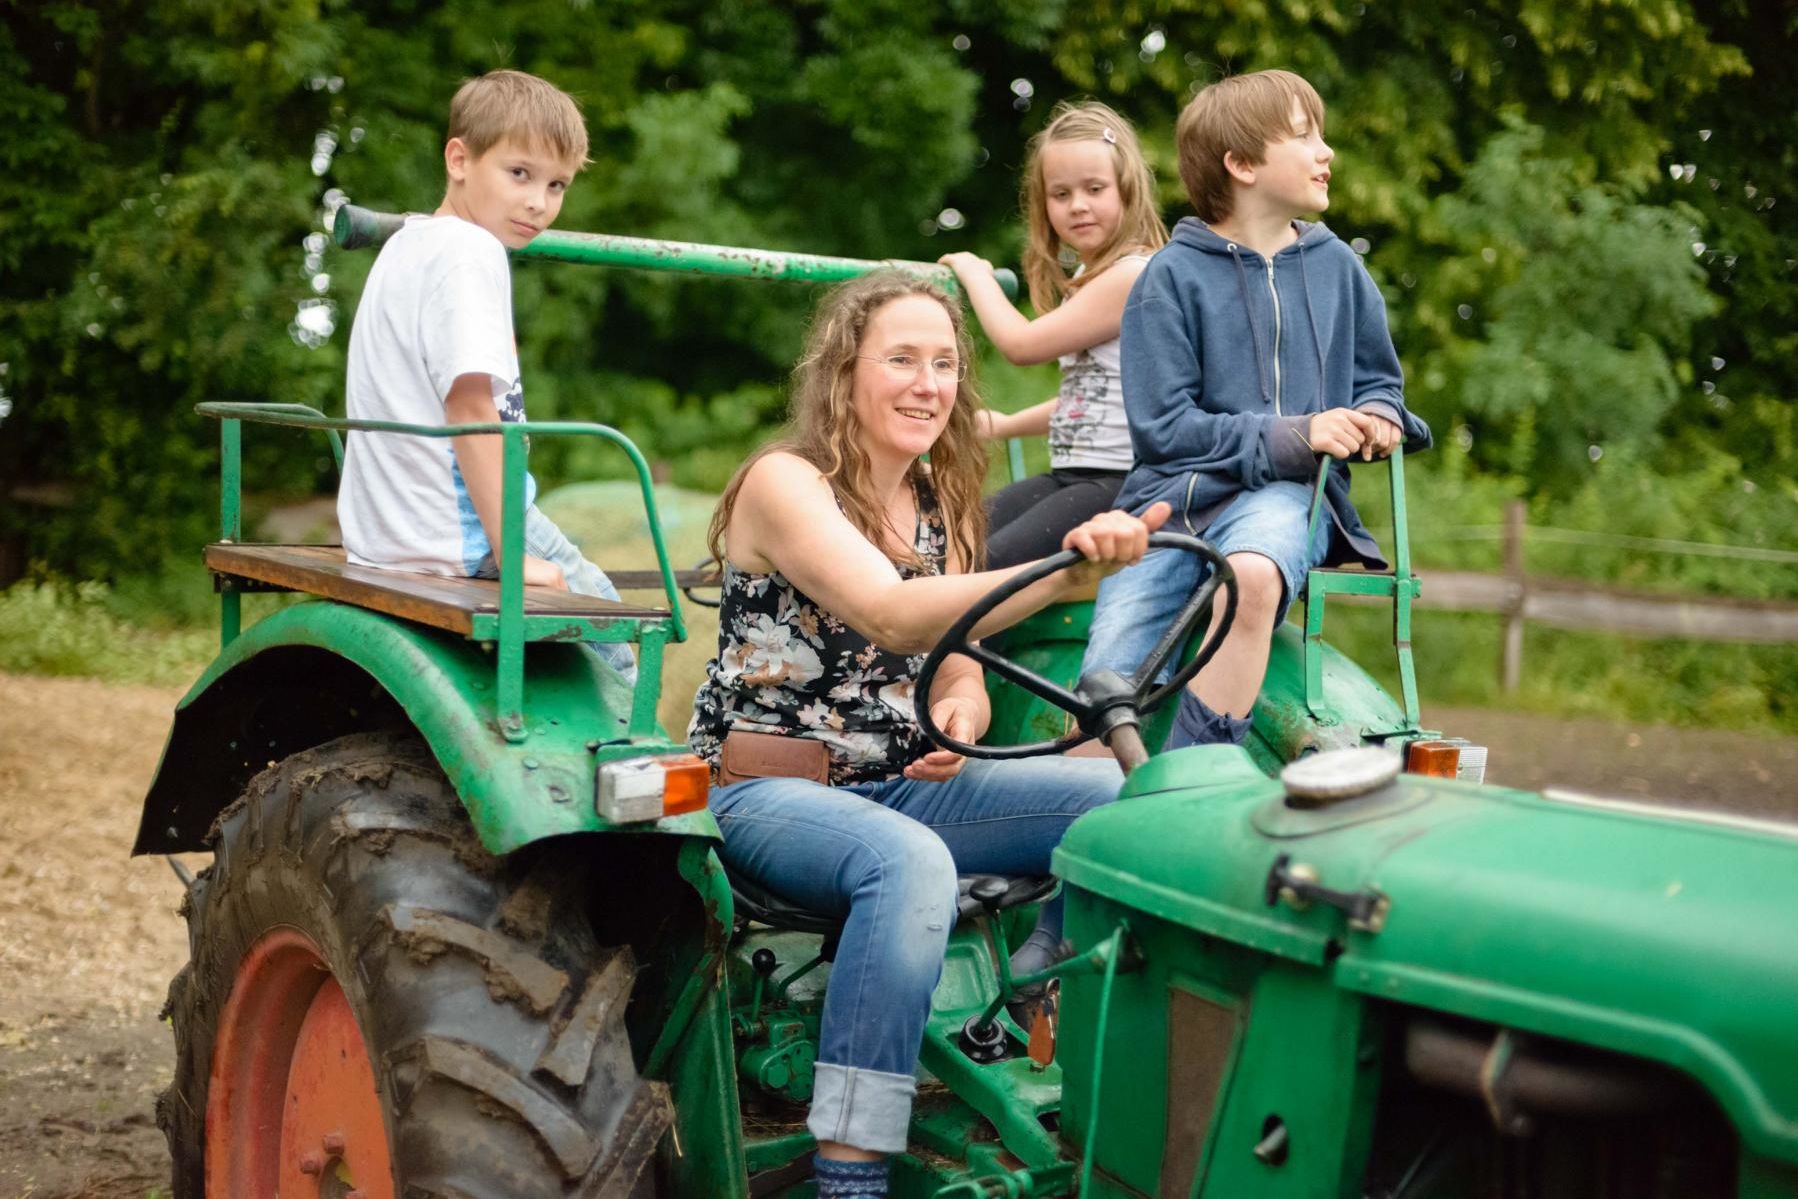 Frau fährt grünen Traktor, hinter ihr sitzen drei Kinder mit auf dem Traktor, zwei Jungen und ein Mädchen